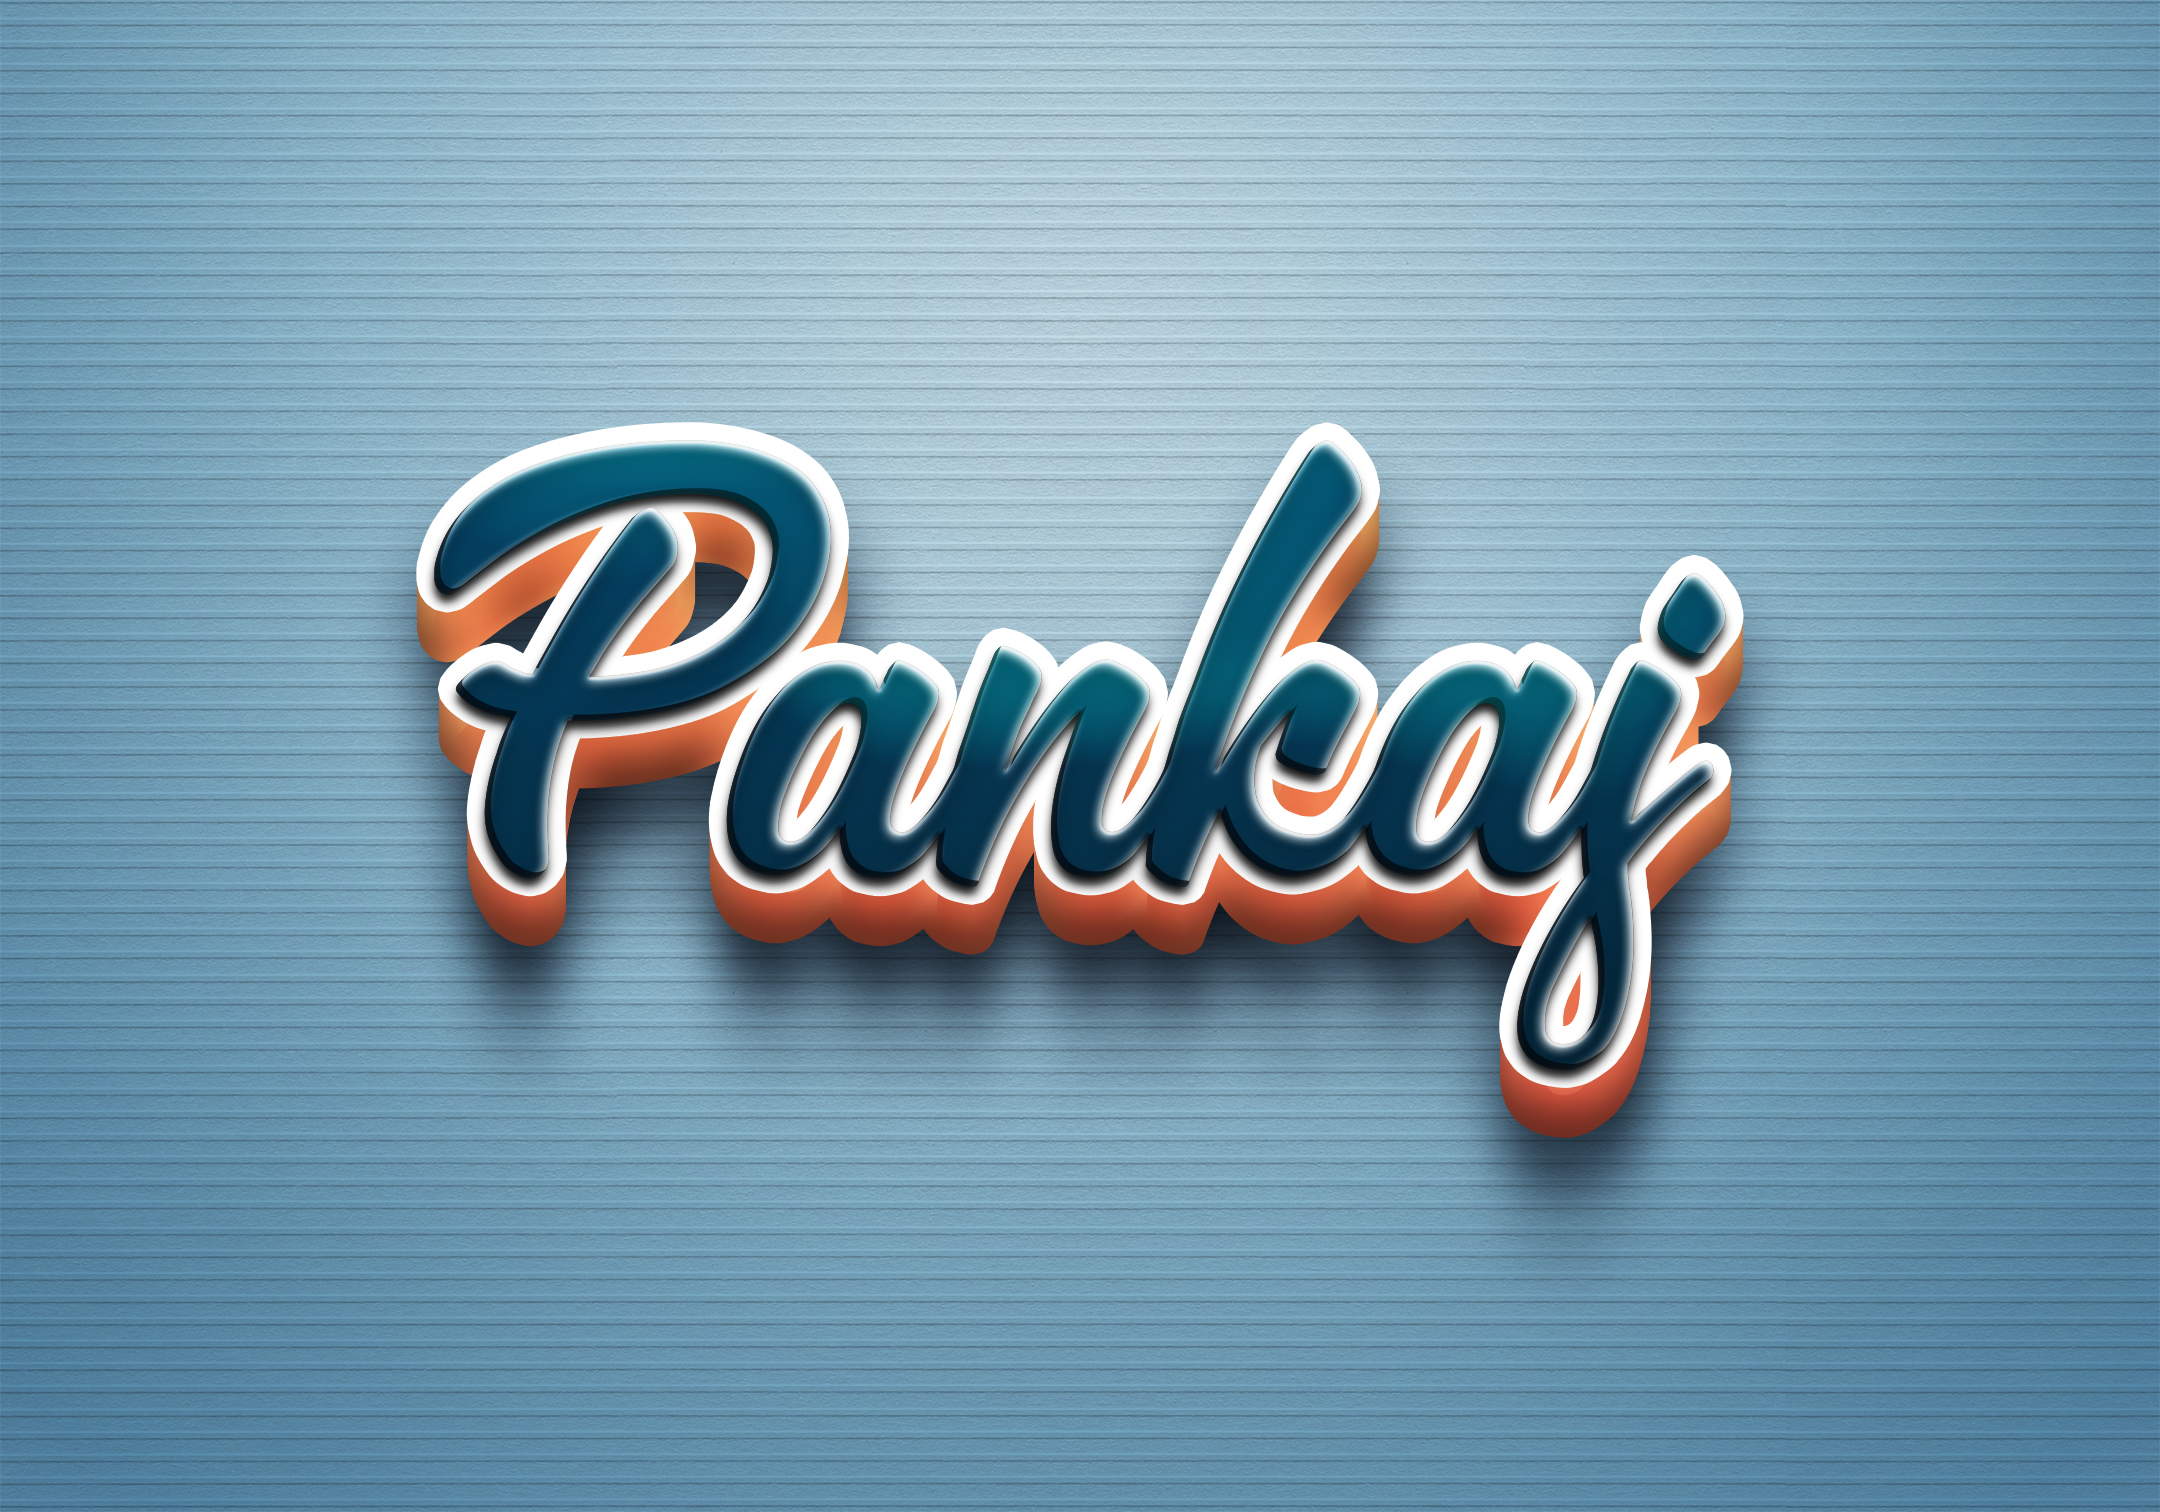 Pankaj evane Logo by Pankaj Evane on Dribbble